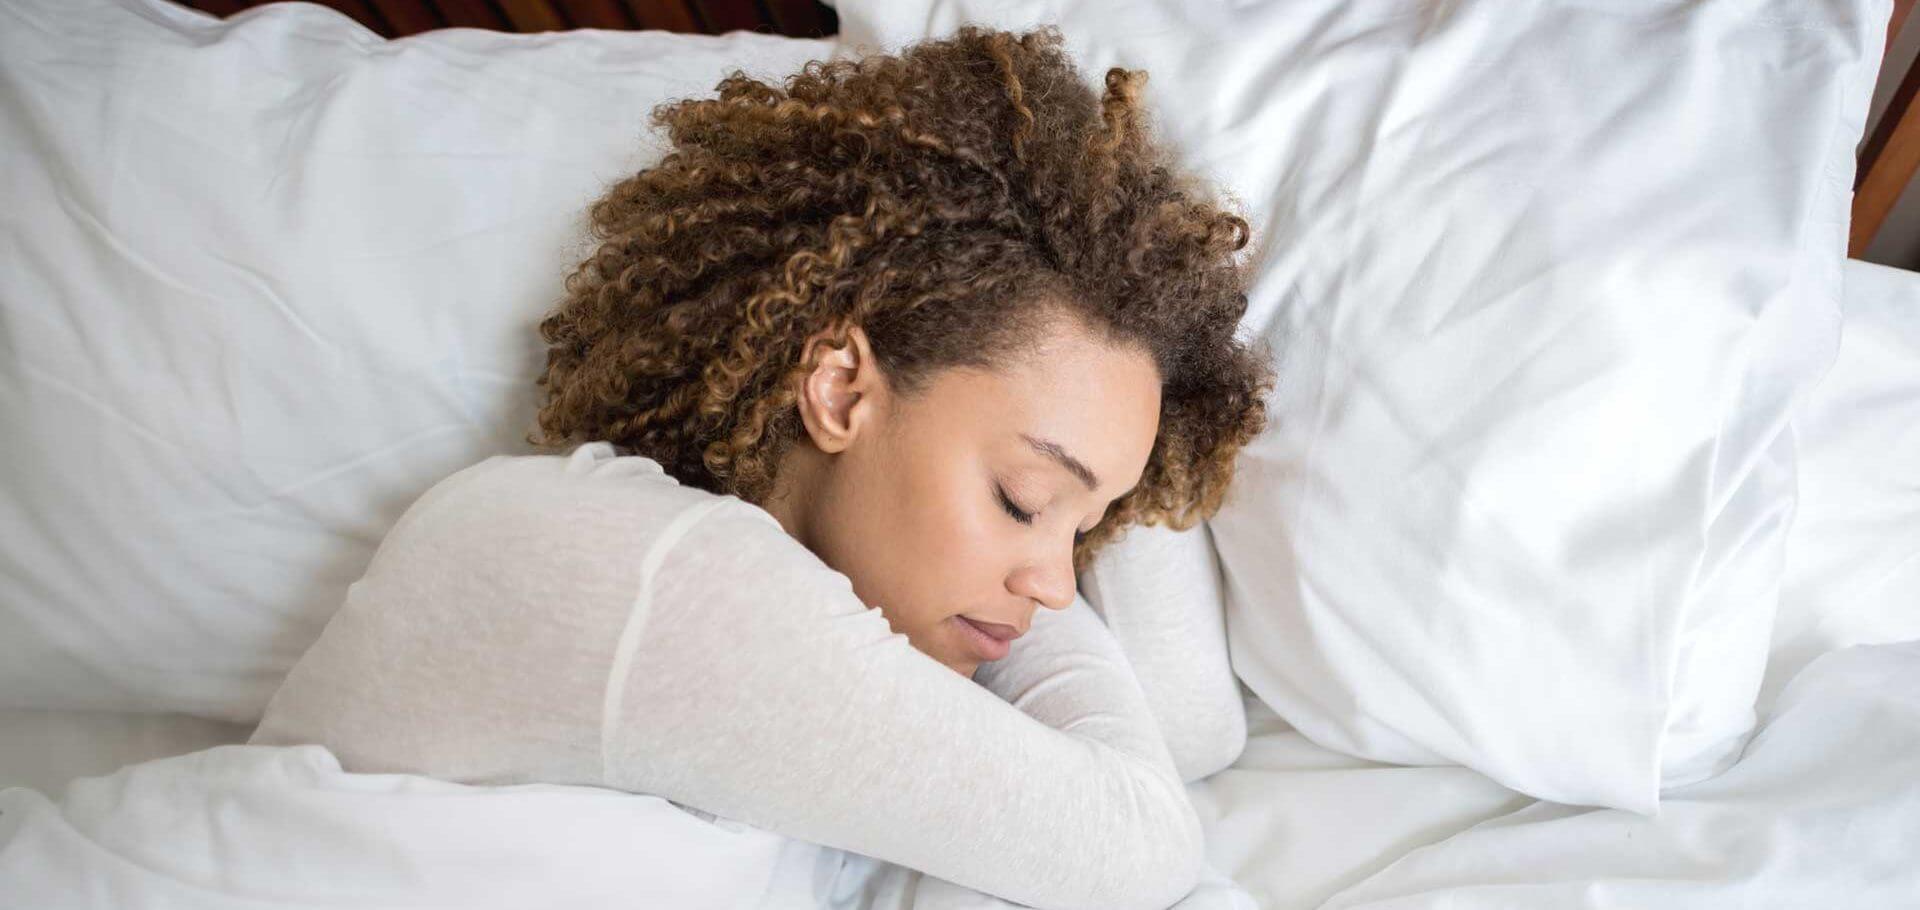 พักผ่อนอย่างที่คุณสมควรได้รับ: ไกลซีนสามารถช่วยให้คุณนอนหลับได้ลึกและมีสุขภาพดีขึ้น